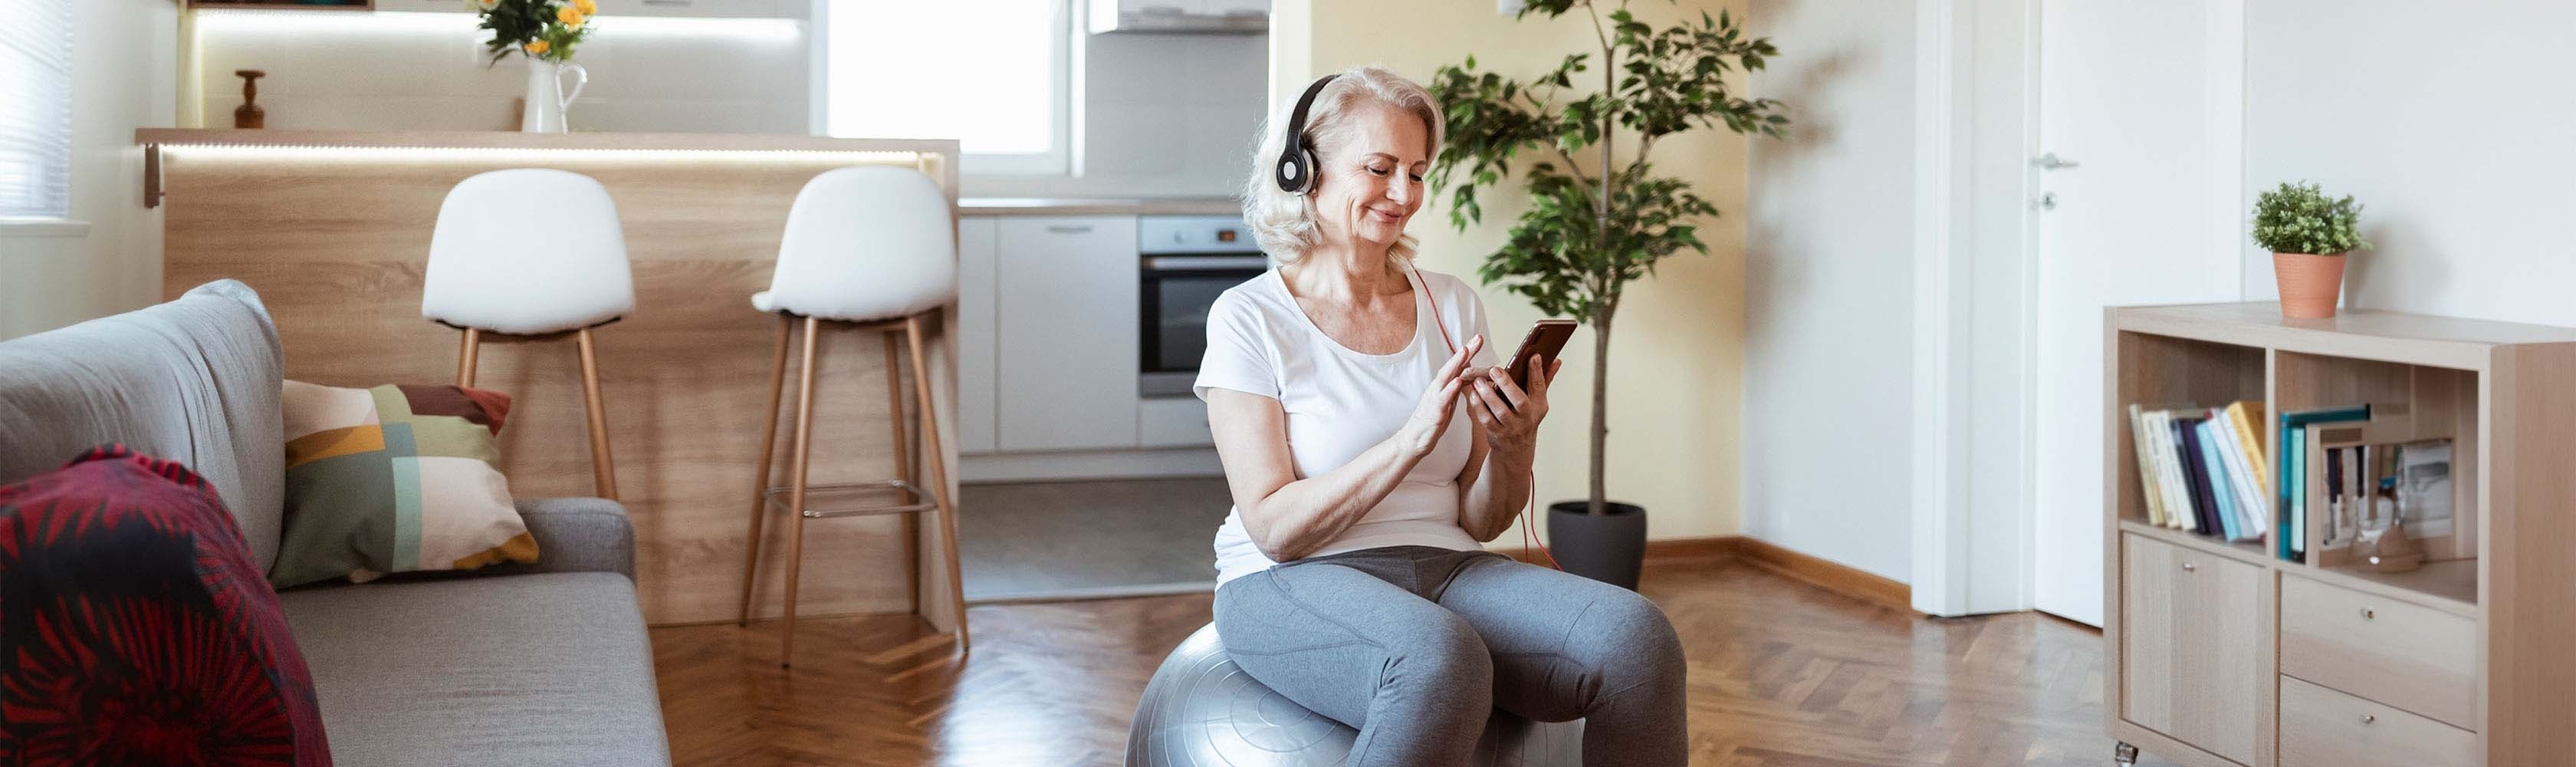 Ältere Frau schaut auf ihren digitalen Begleiter, während sie im Wohnzimmer auf einem Gymnastikball sitzt.